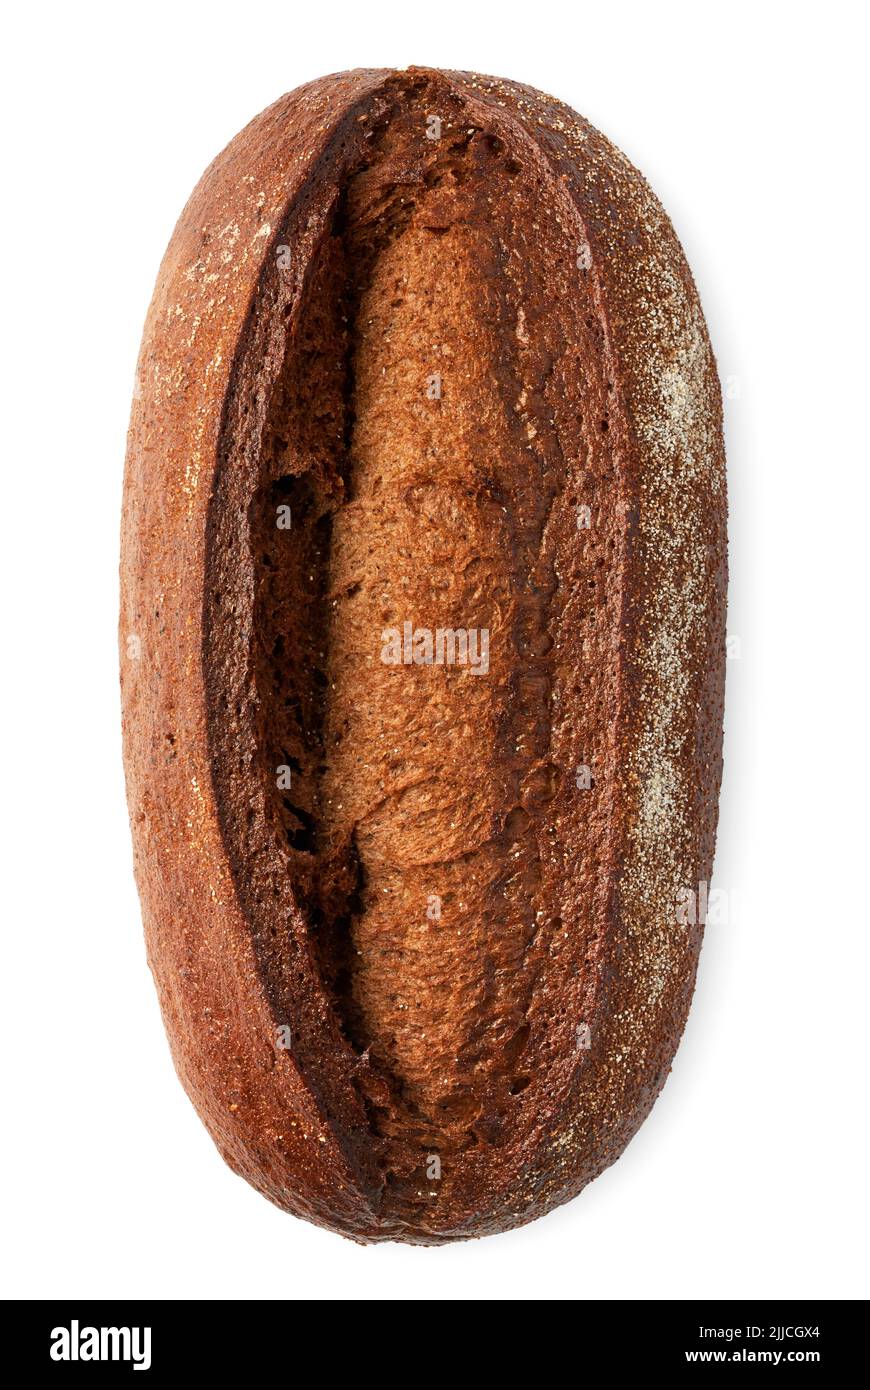 Tradicional pan de centeno oscuro casero, aislado sobre fondo blanco Foto de stock